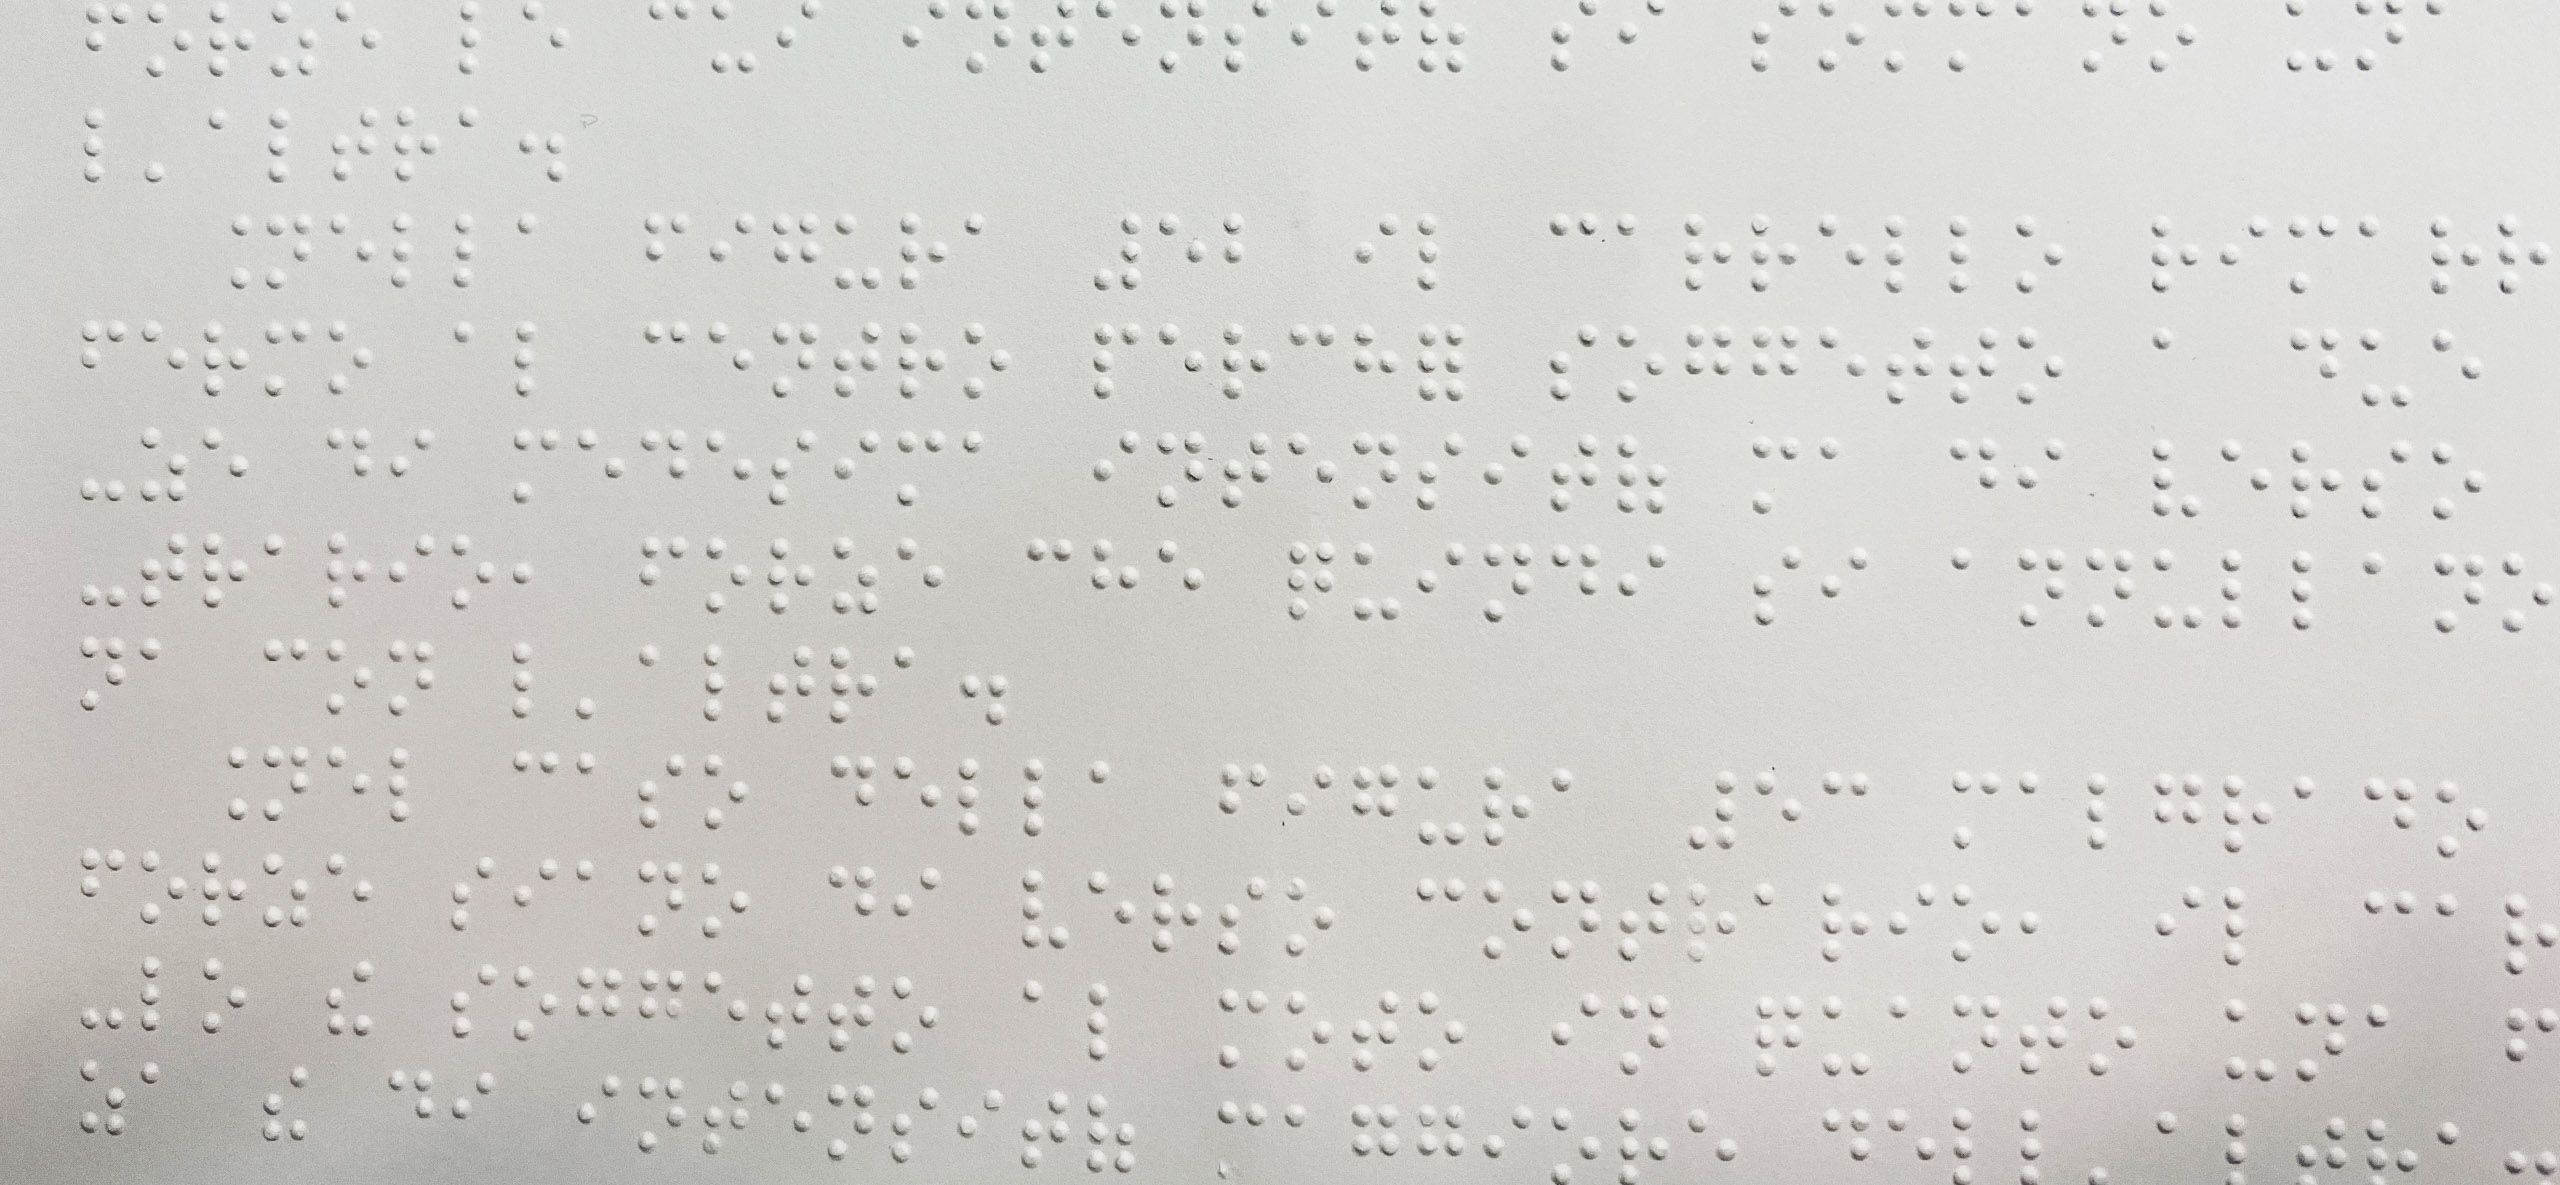 Foto di una pagina di un libro in codice Braille